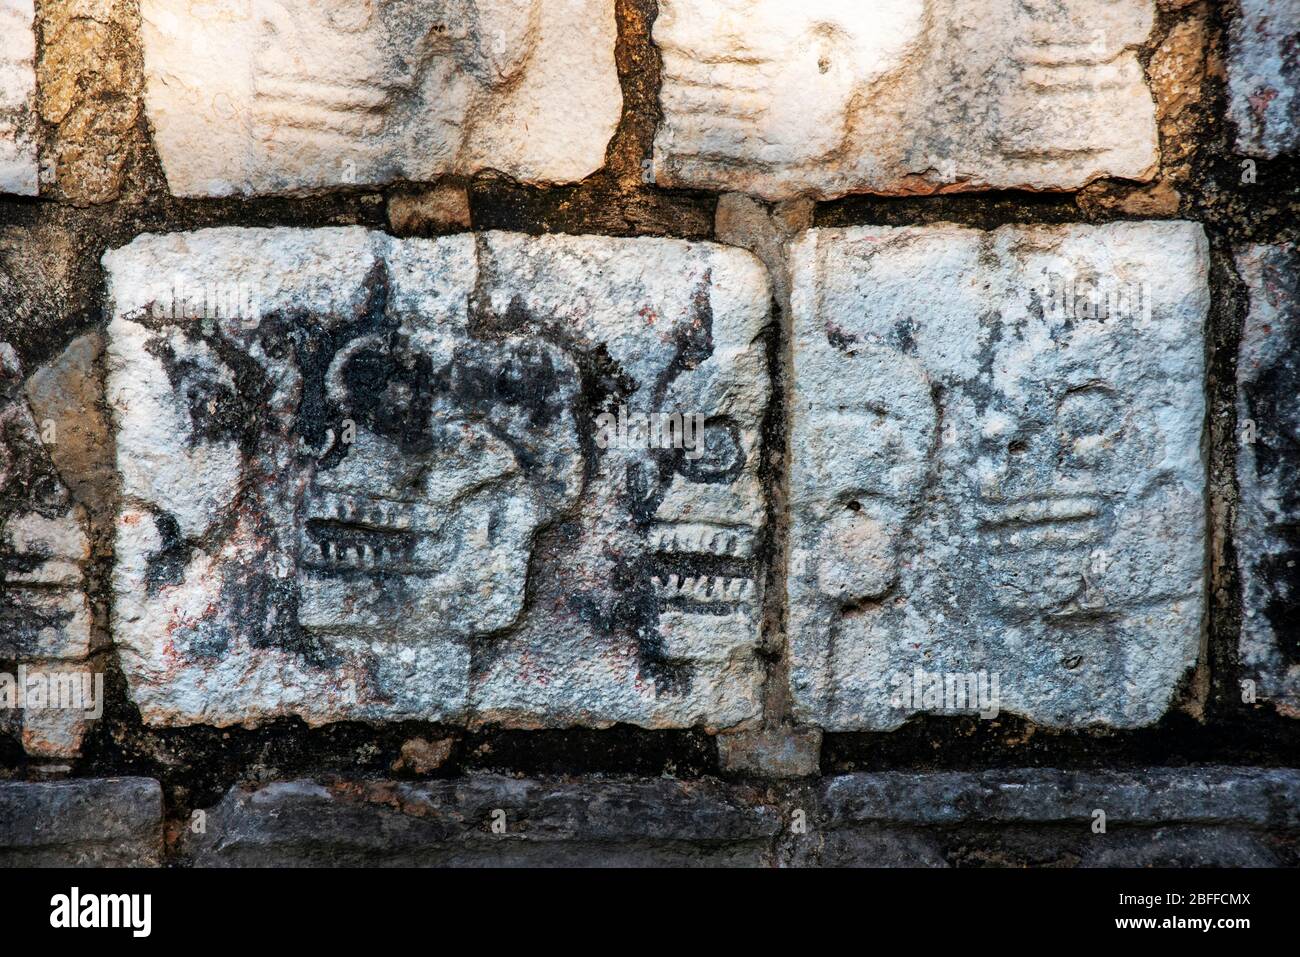 Ein Schnitzwerk eines Schädels schmücken ein Gebäude in der Maya-Stadt Chichen Itza Archäologische Stätte in Yucatan Halbinsel, Quintana Roo, Karibik Küste, ME Stockfoto